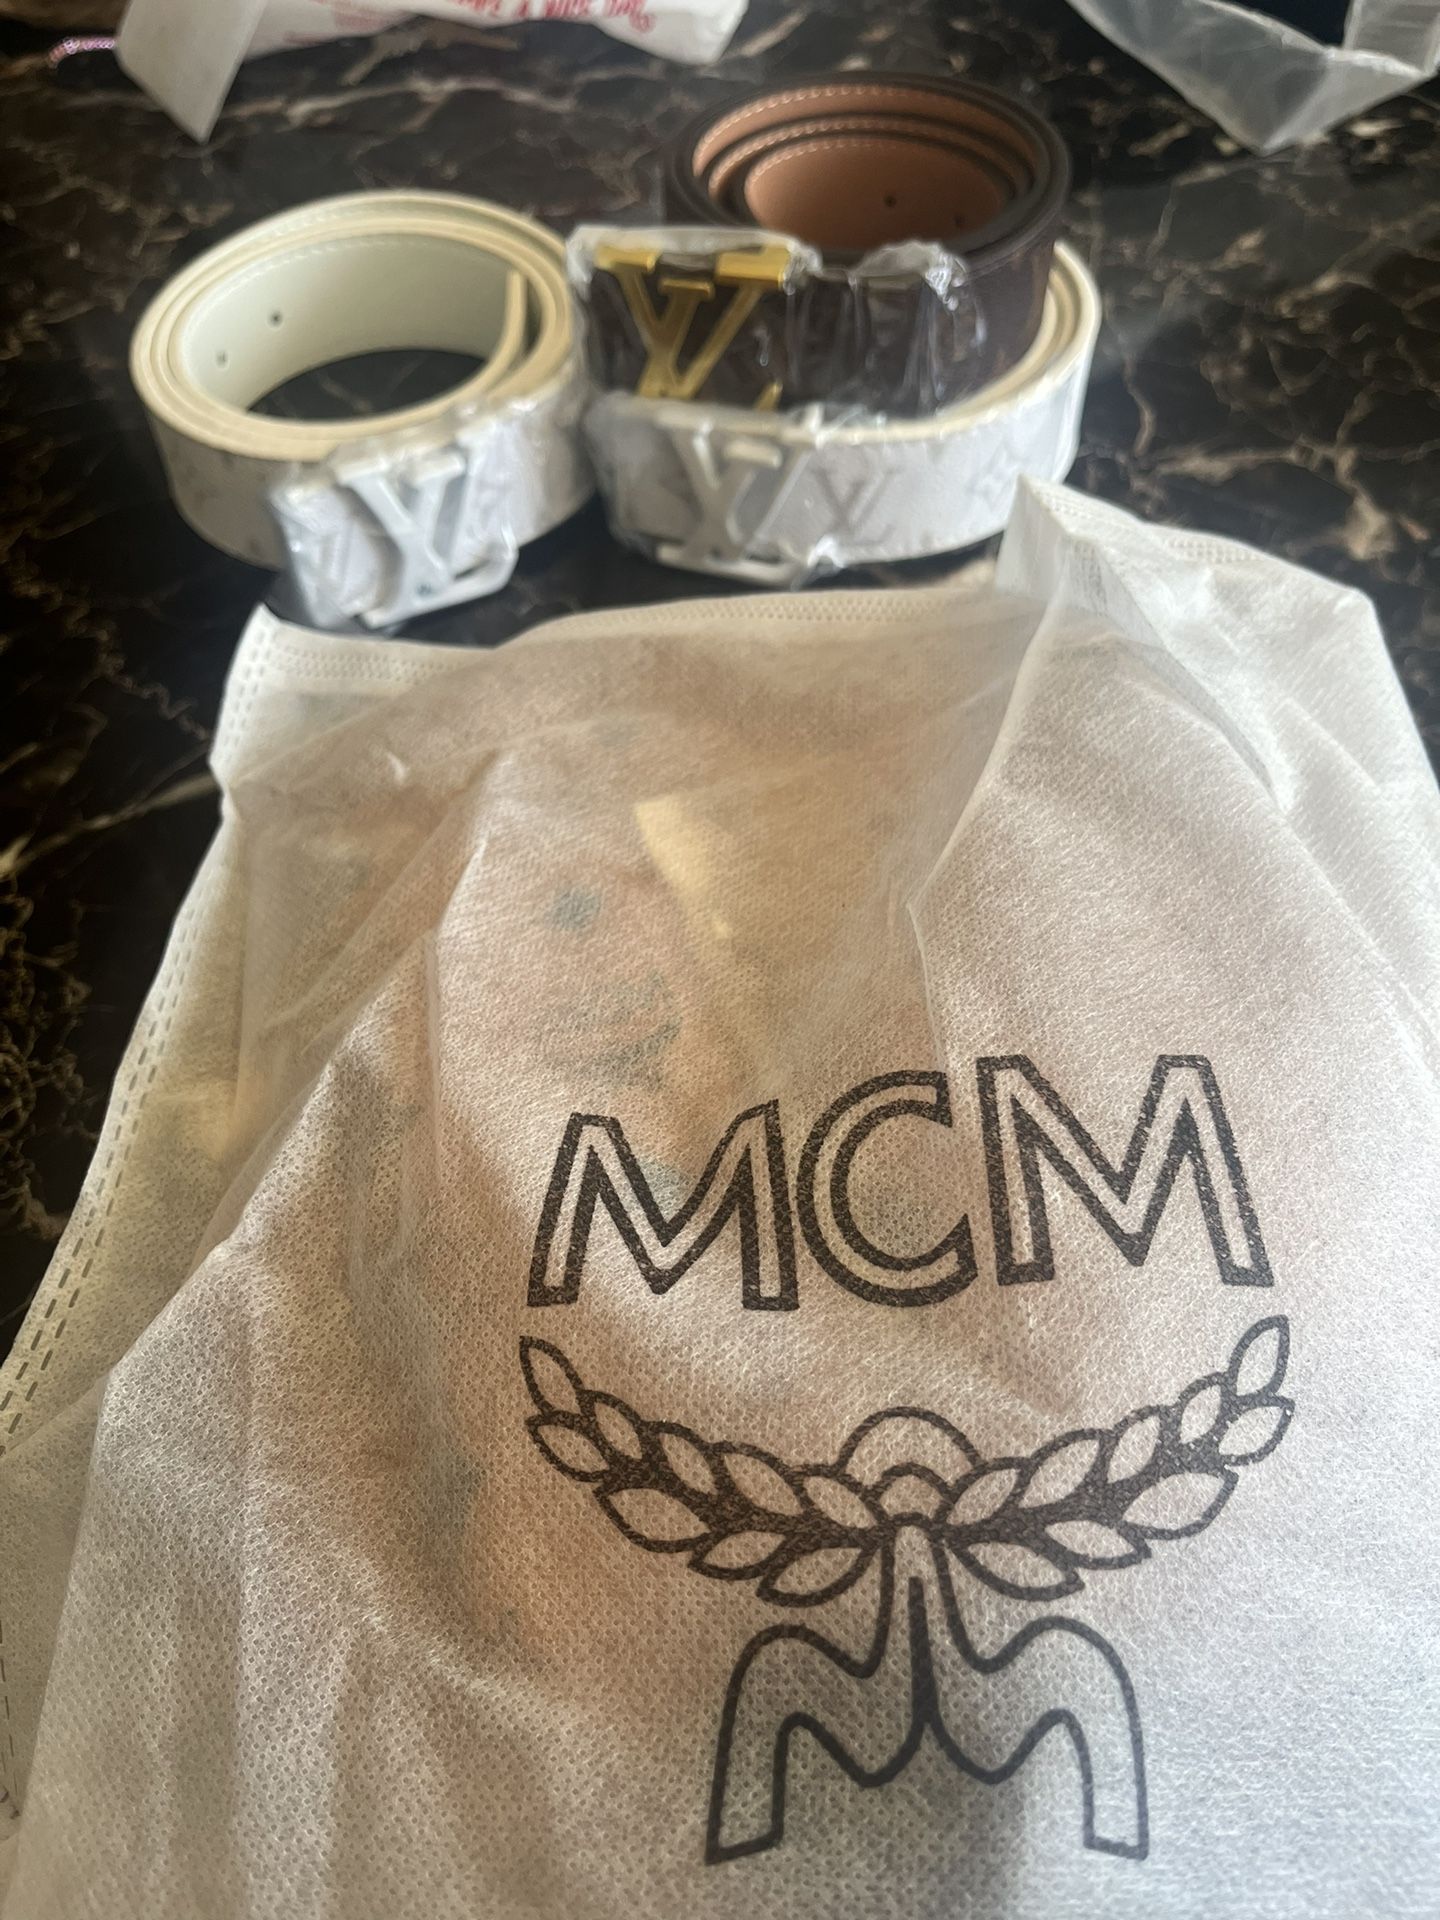 Mcm Bag And Designer Belts